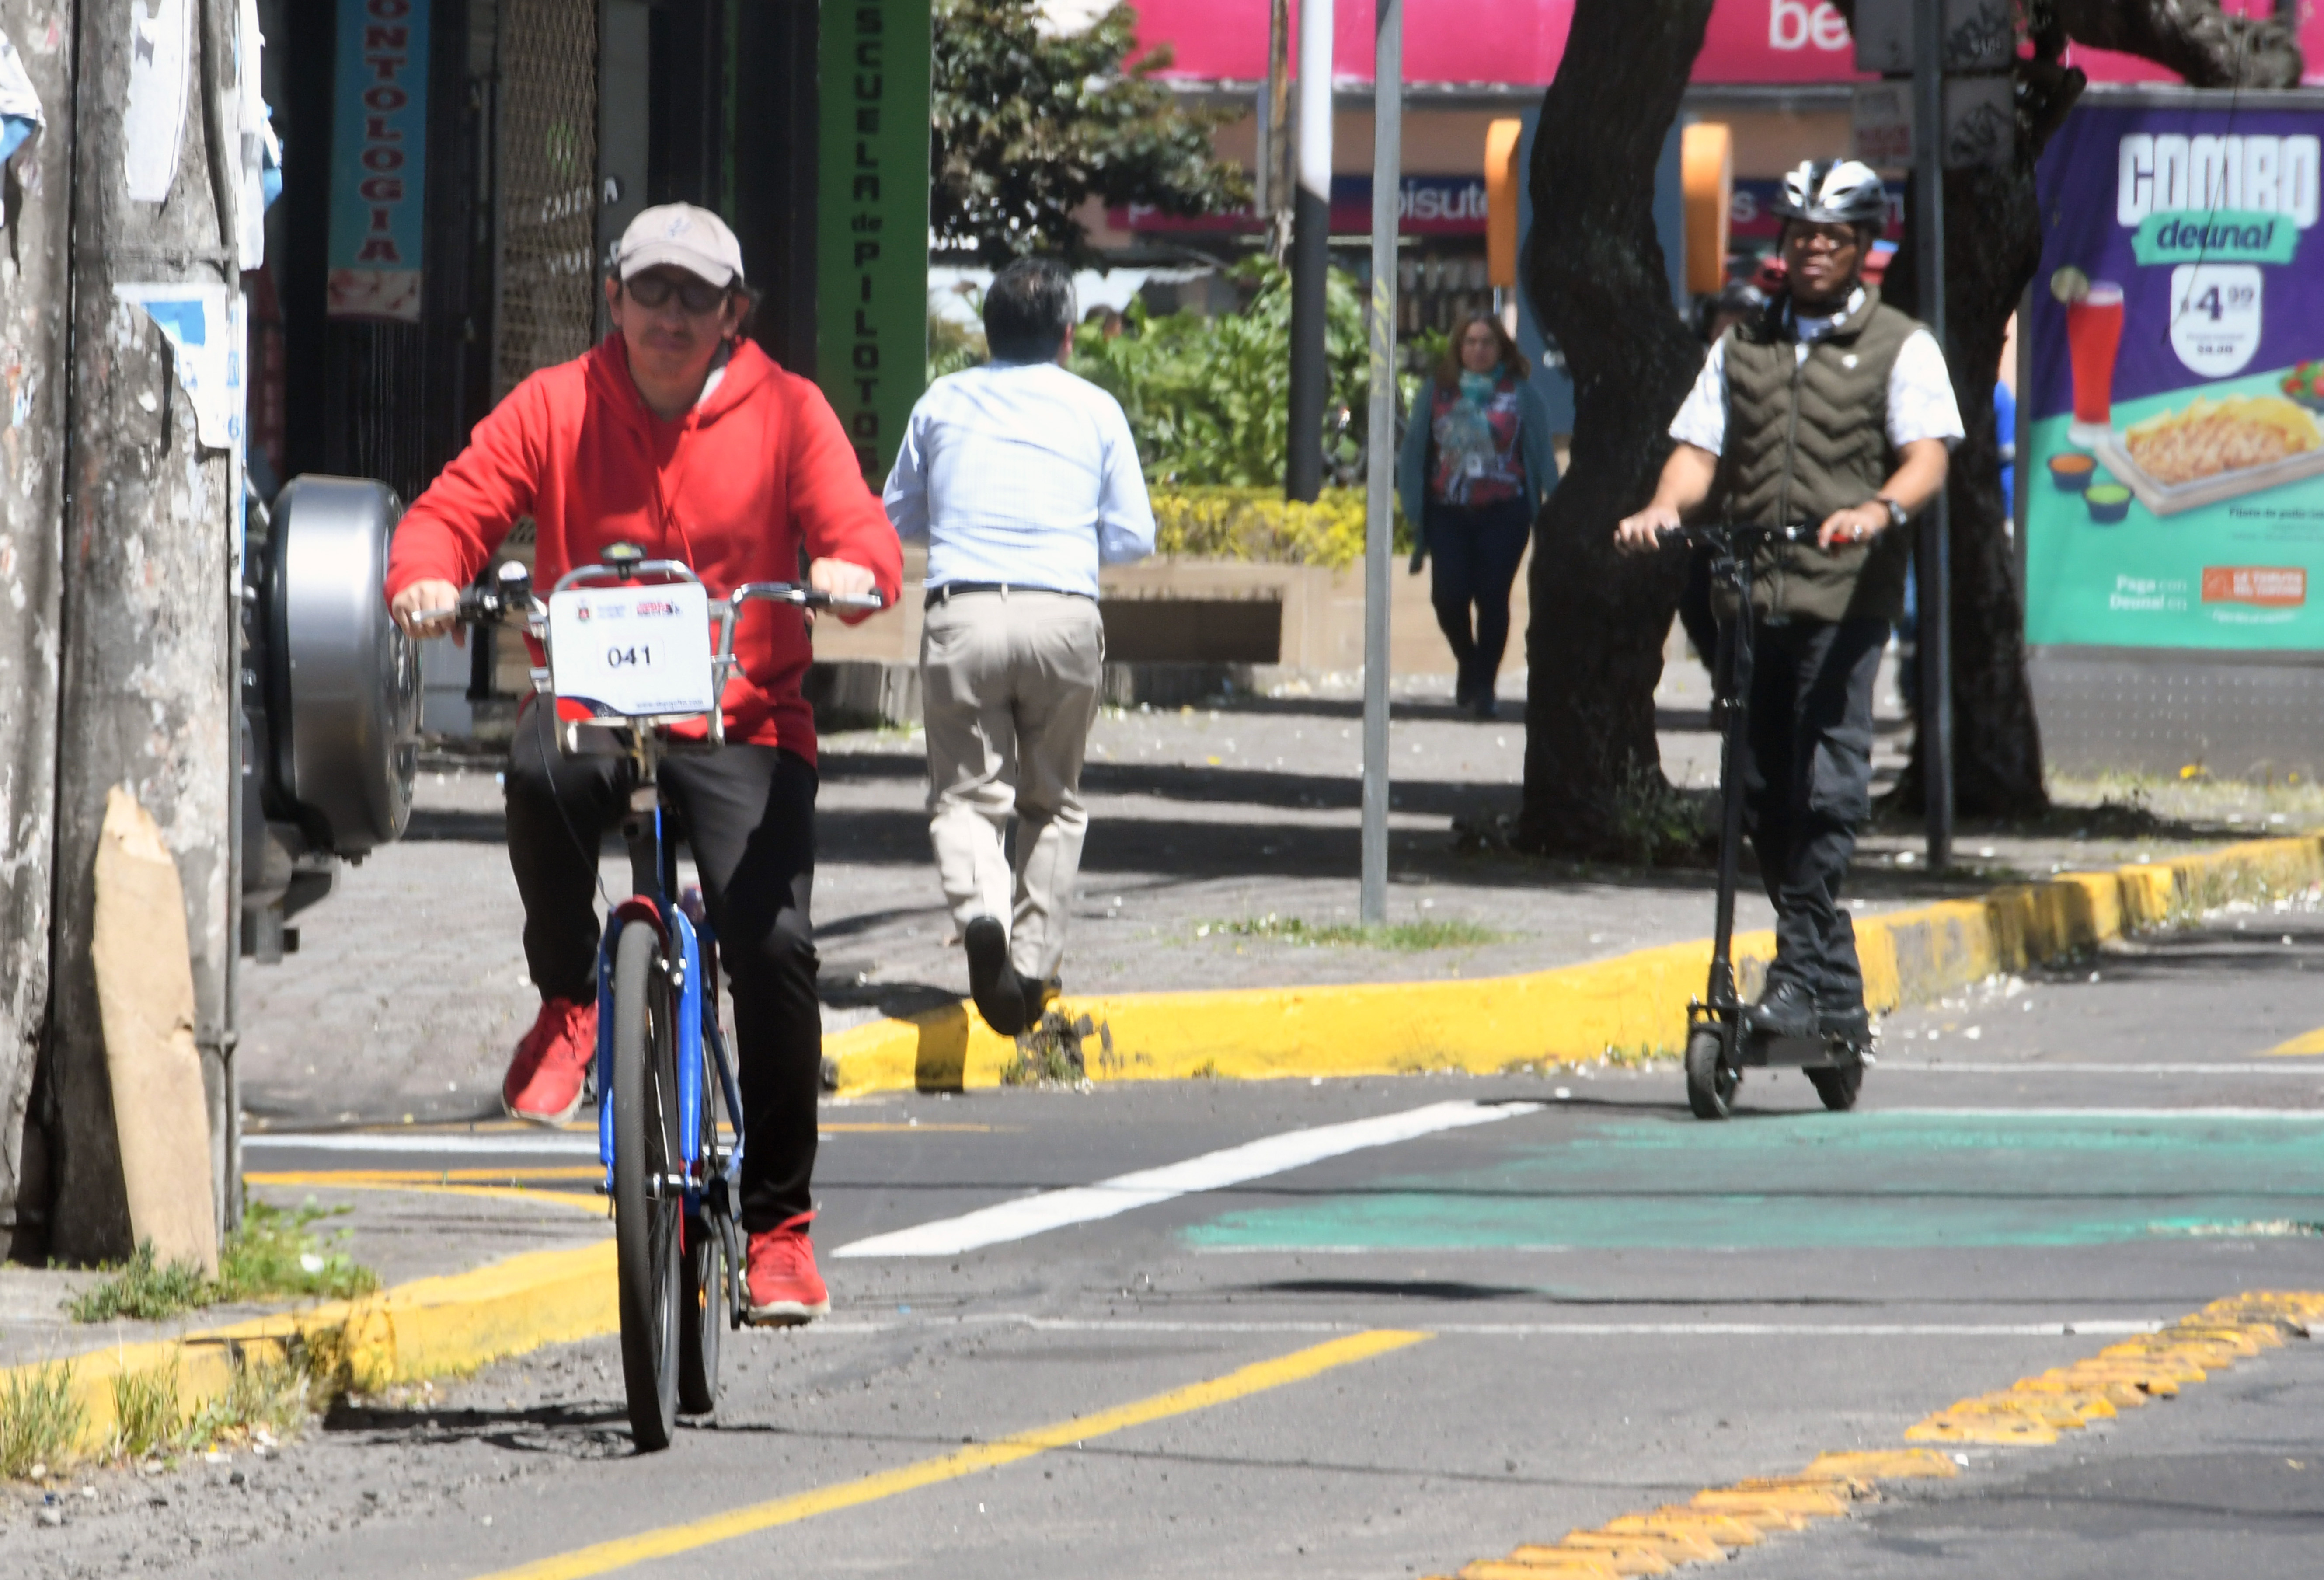 Desplazarse en bicicleta en trayectos cortos reduciría emisiones de CO2 -  Uno TV